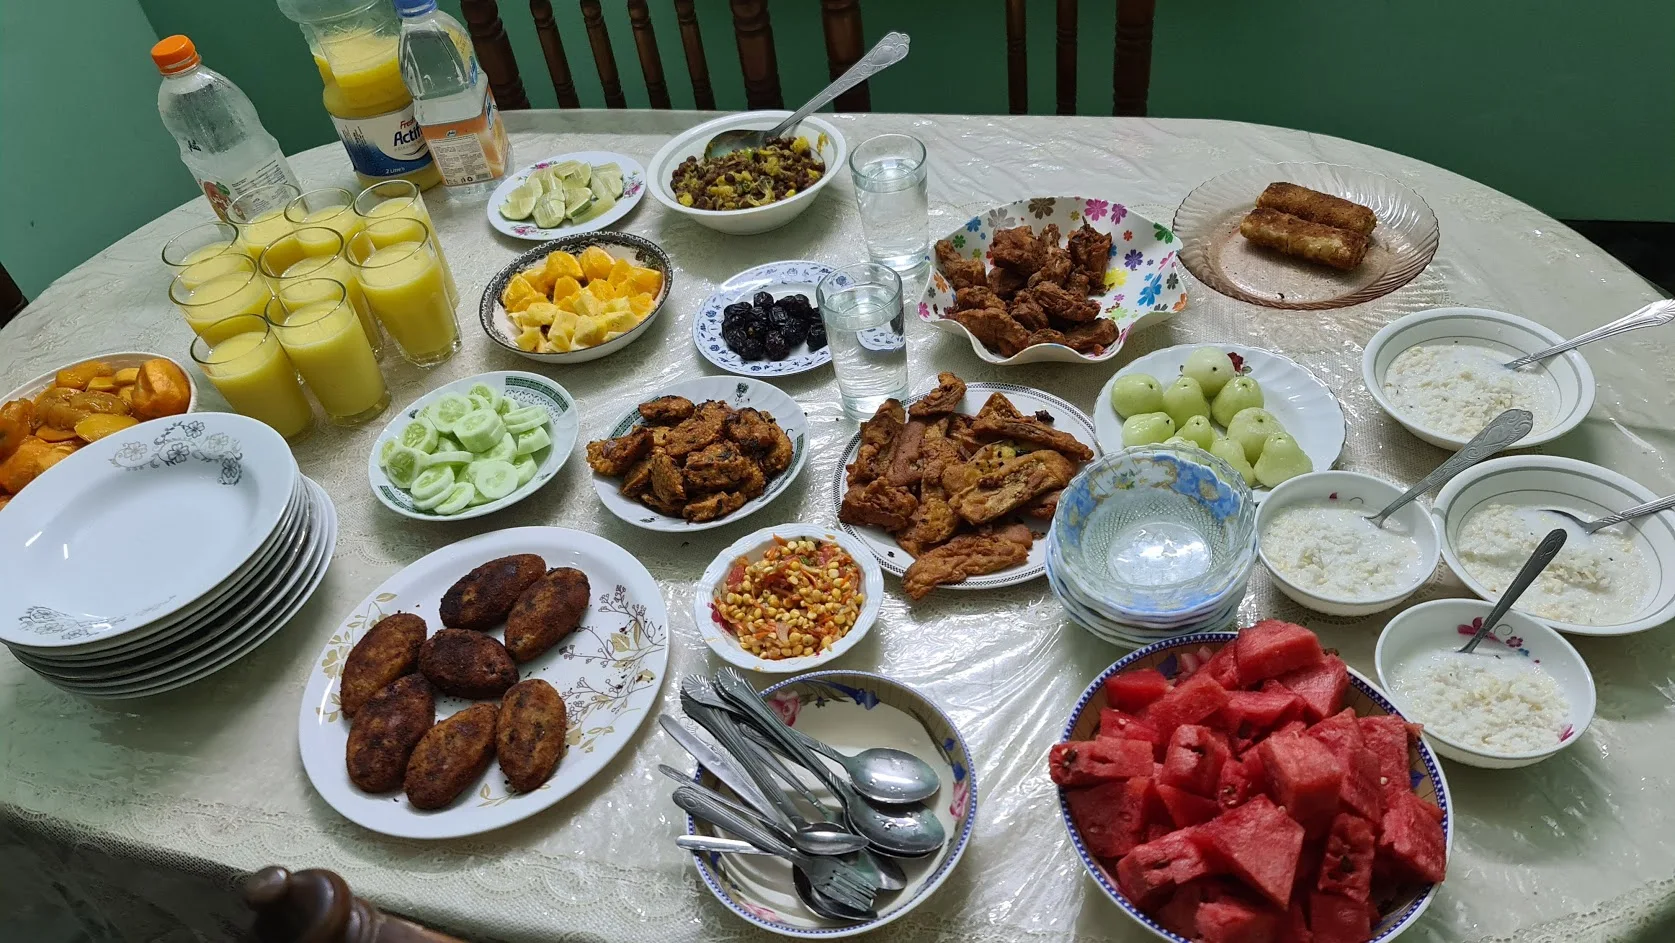 ইফতারের পিক ডাউনলোড - কি দিয়ে ইফতার করা উত্তম - খেজুরের ছবি - iftar er pic - insightflowblog.com - Image no 8